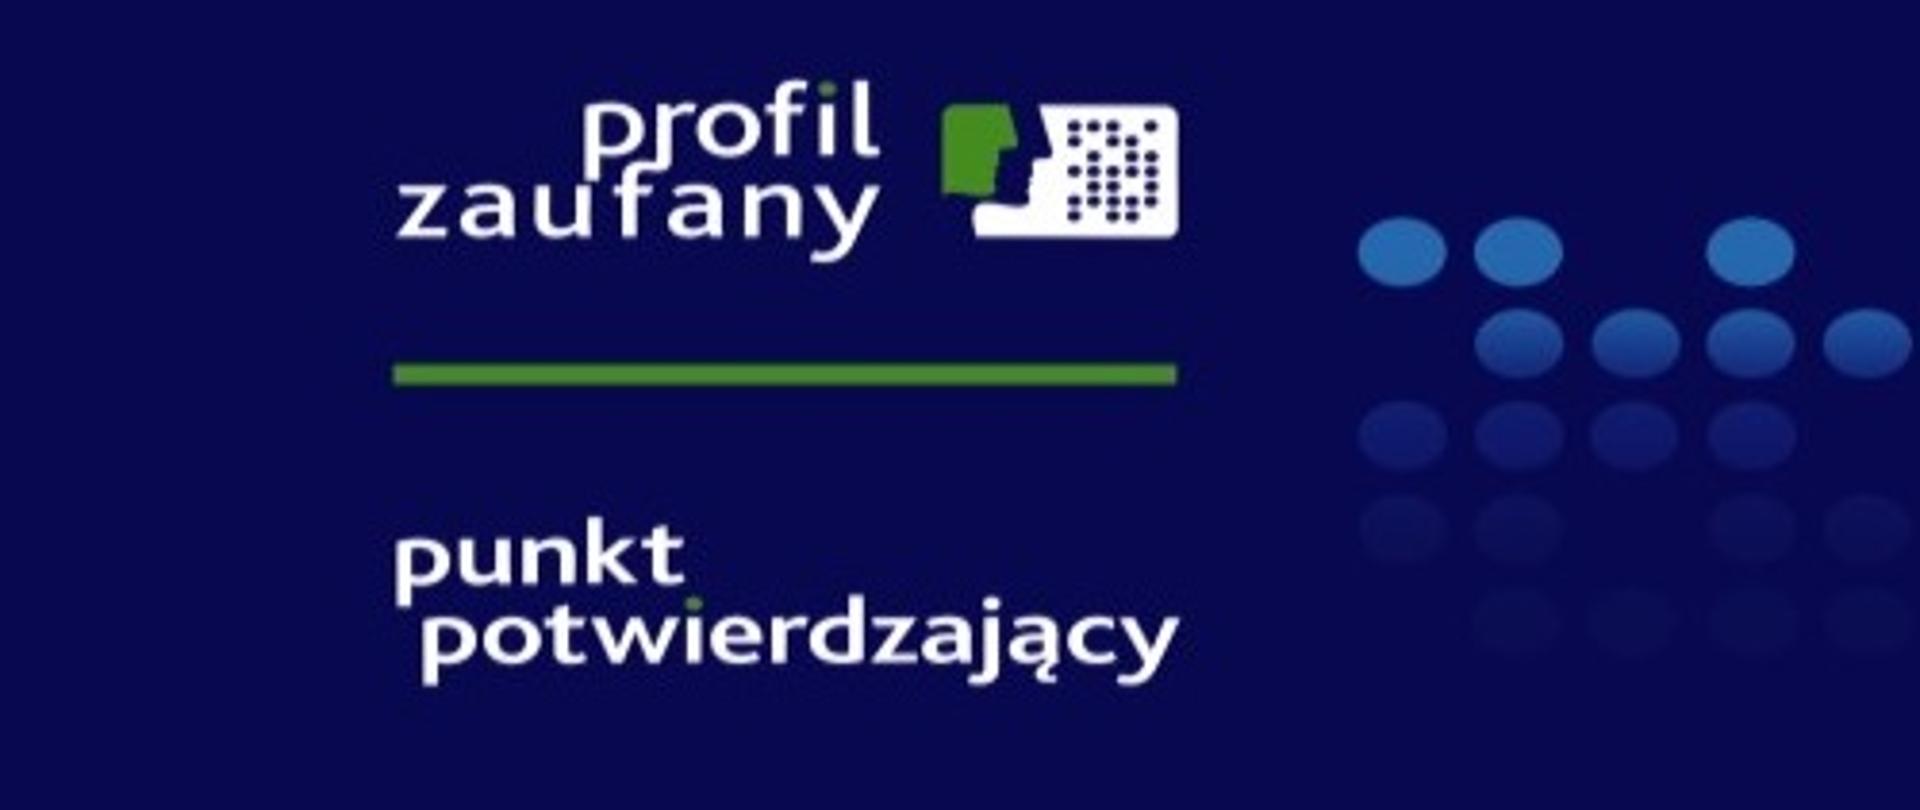 logo - profil zaufany